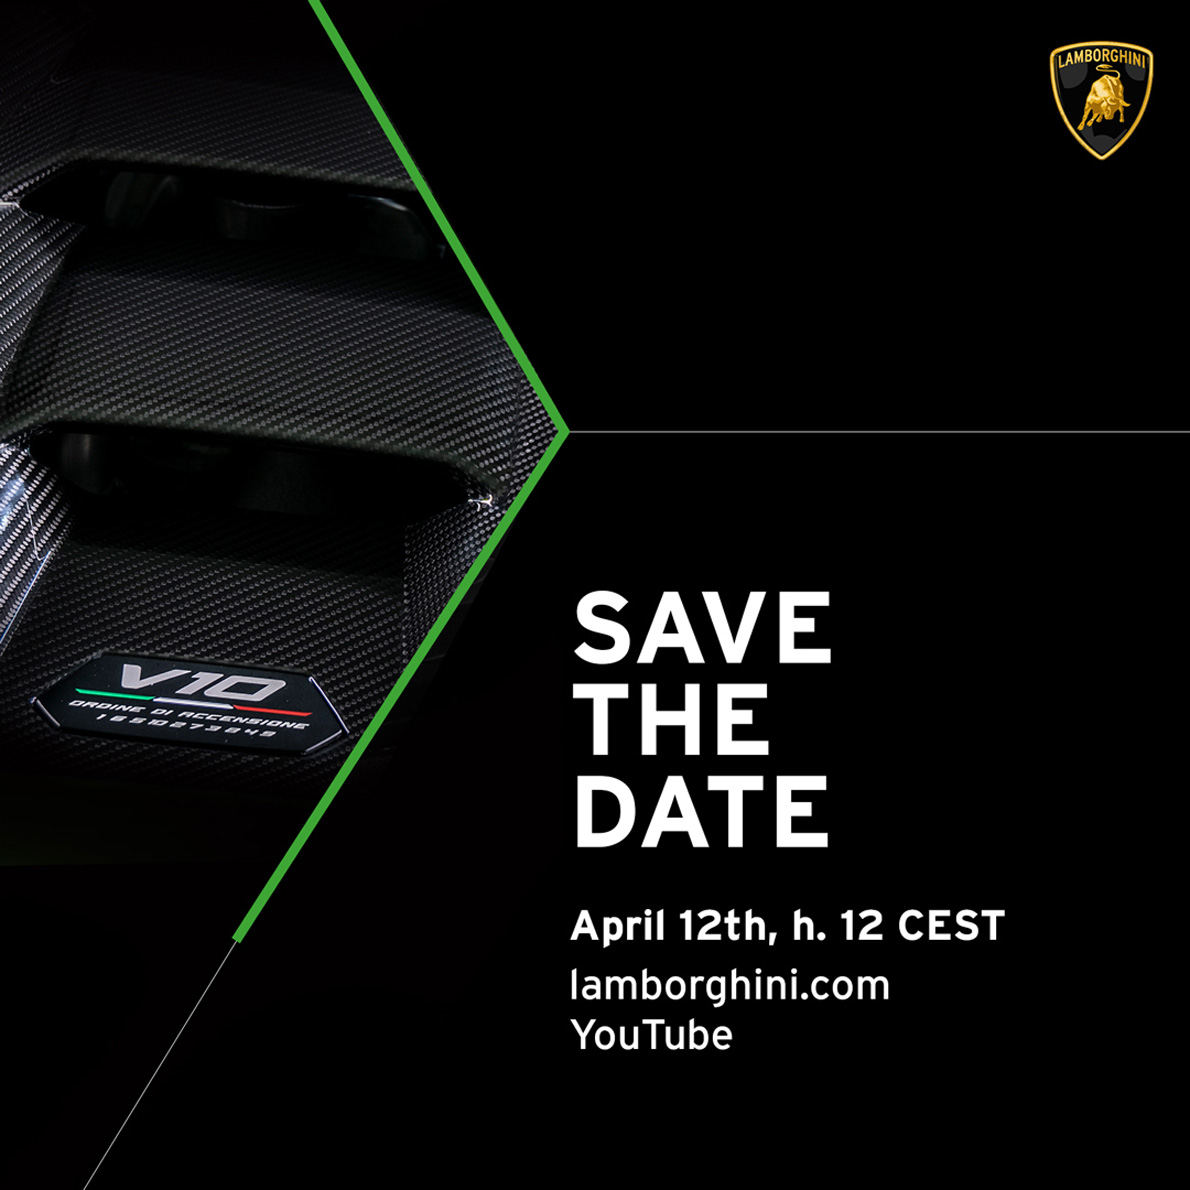 Nuova Lamborghini in arrivo il 12 Aprile